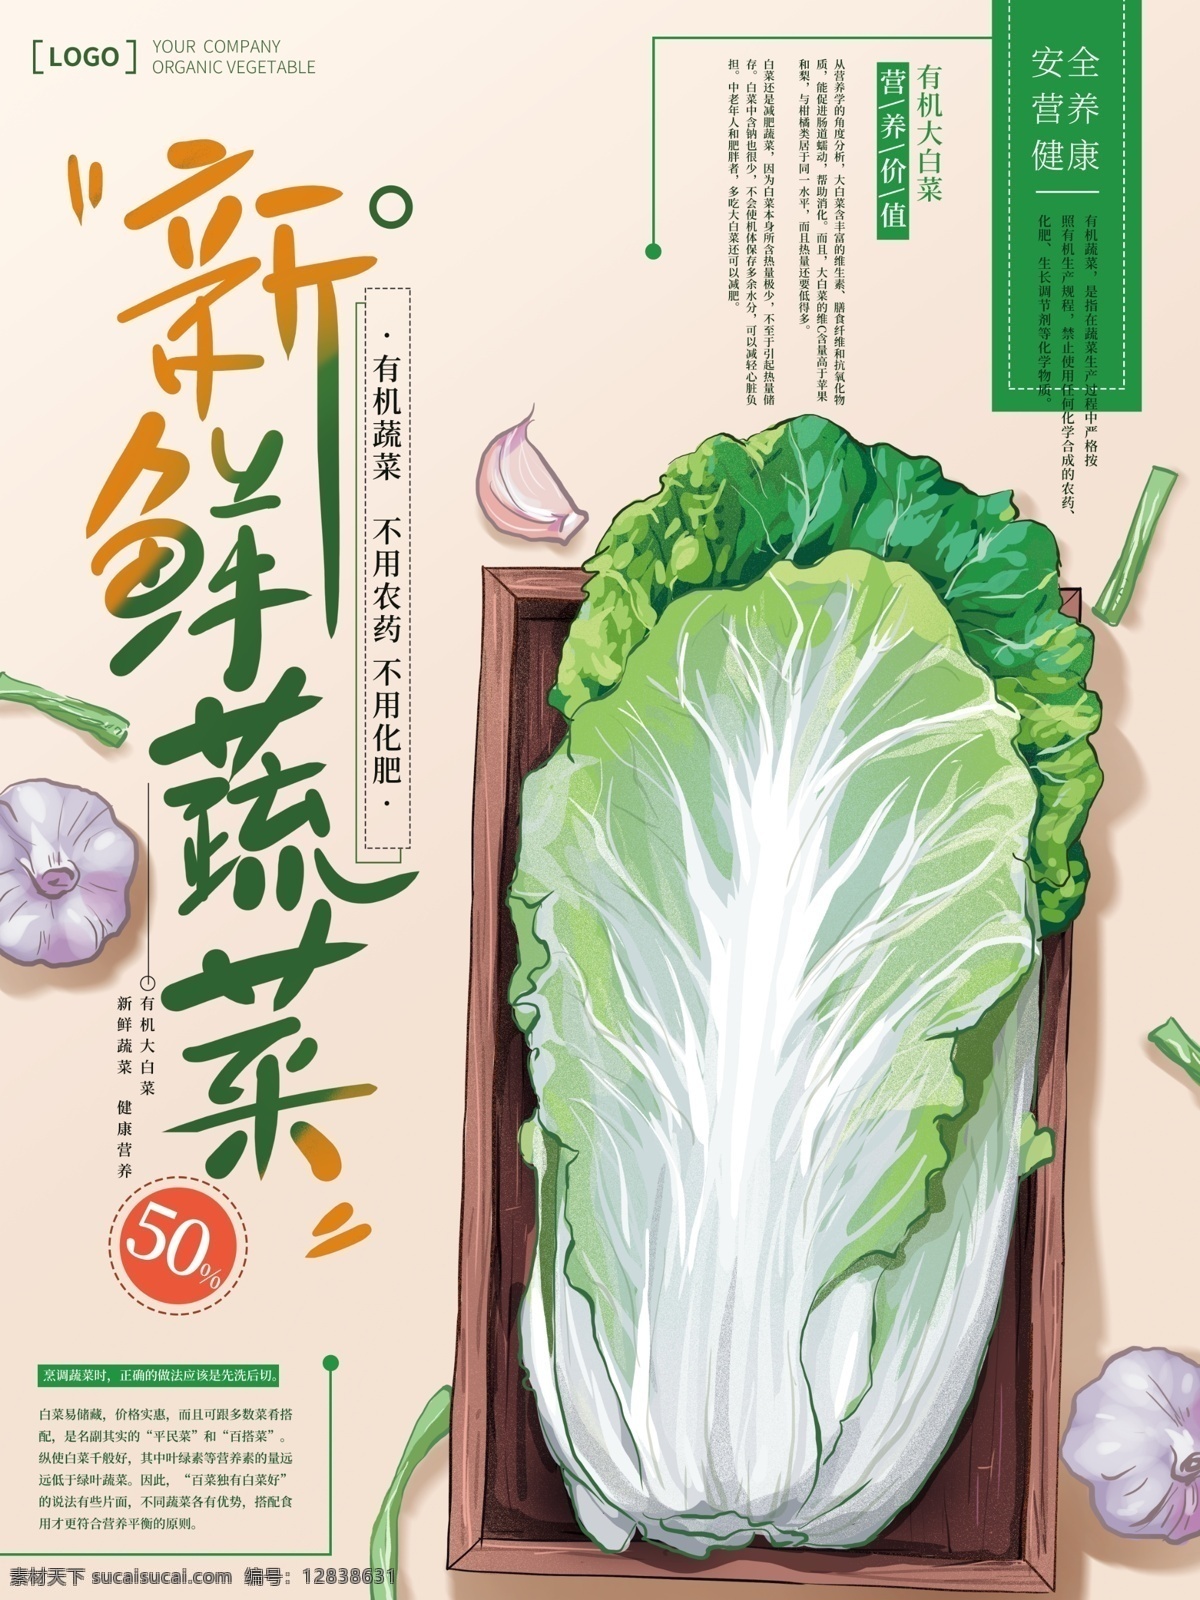 原创 手绘 清新 简约 蔬菜 海报 促销 果蔬 商业 蔬果 新鲜蔬菜 商业海报 白菜